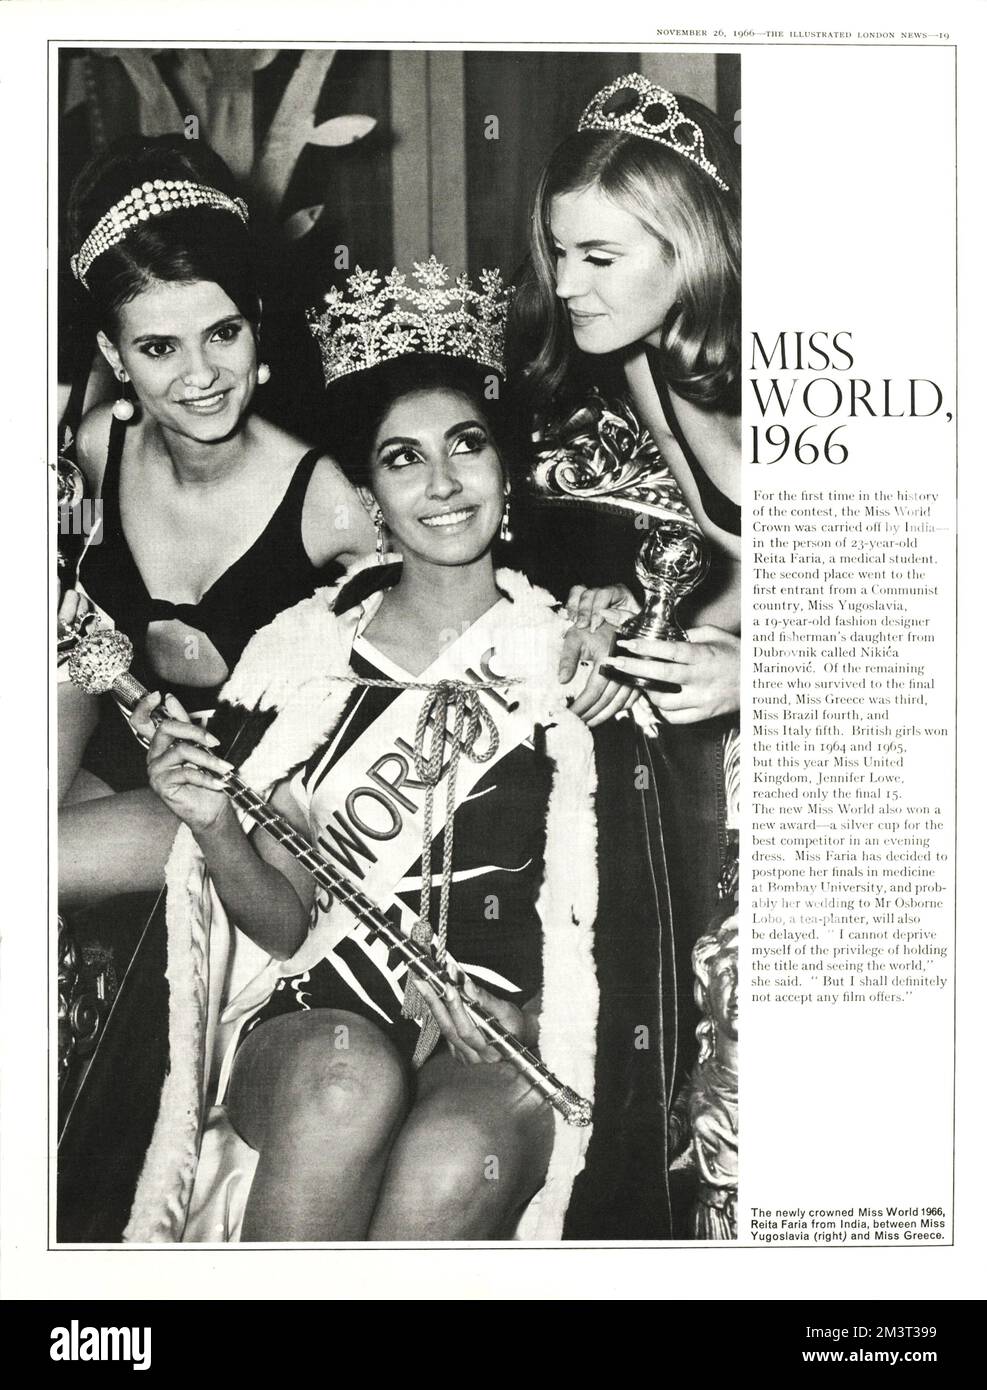 Gewinner der Miss World, Miss India - 23-jährige Reita Faria, Medizinstudentin. Auf der rechten Seite ist Nikica Marinovic (Miss Jugoslawien), die erste Kandidatin aus einem kommunistischen Land, die auf dem zweiten Platz und auf der linken Seite die drittplatzierte Miss Griechenland Datum: 1966 Stockfoto